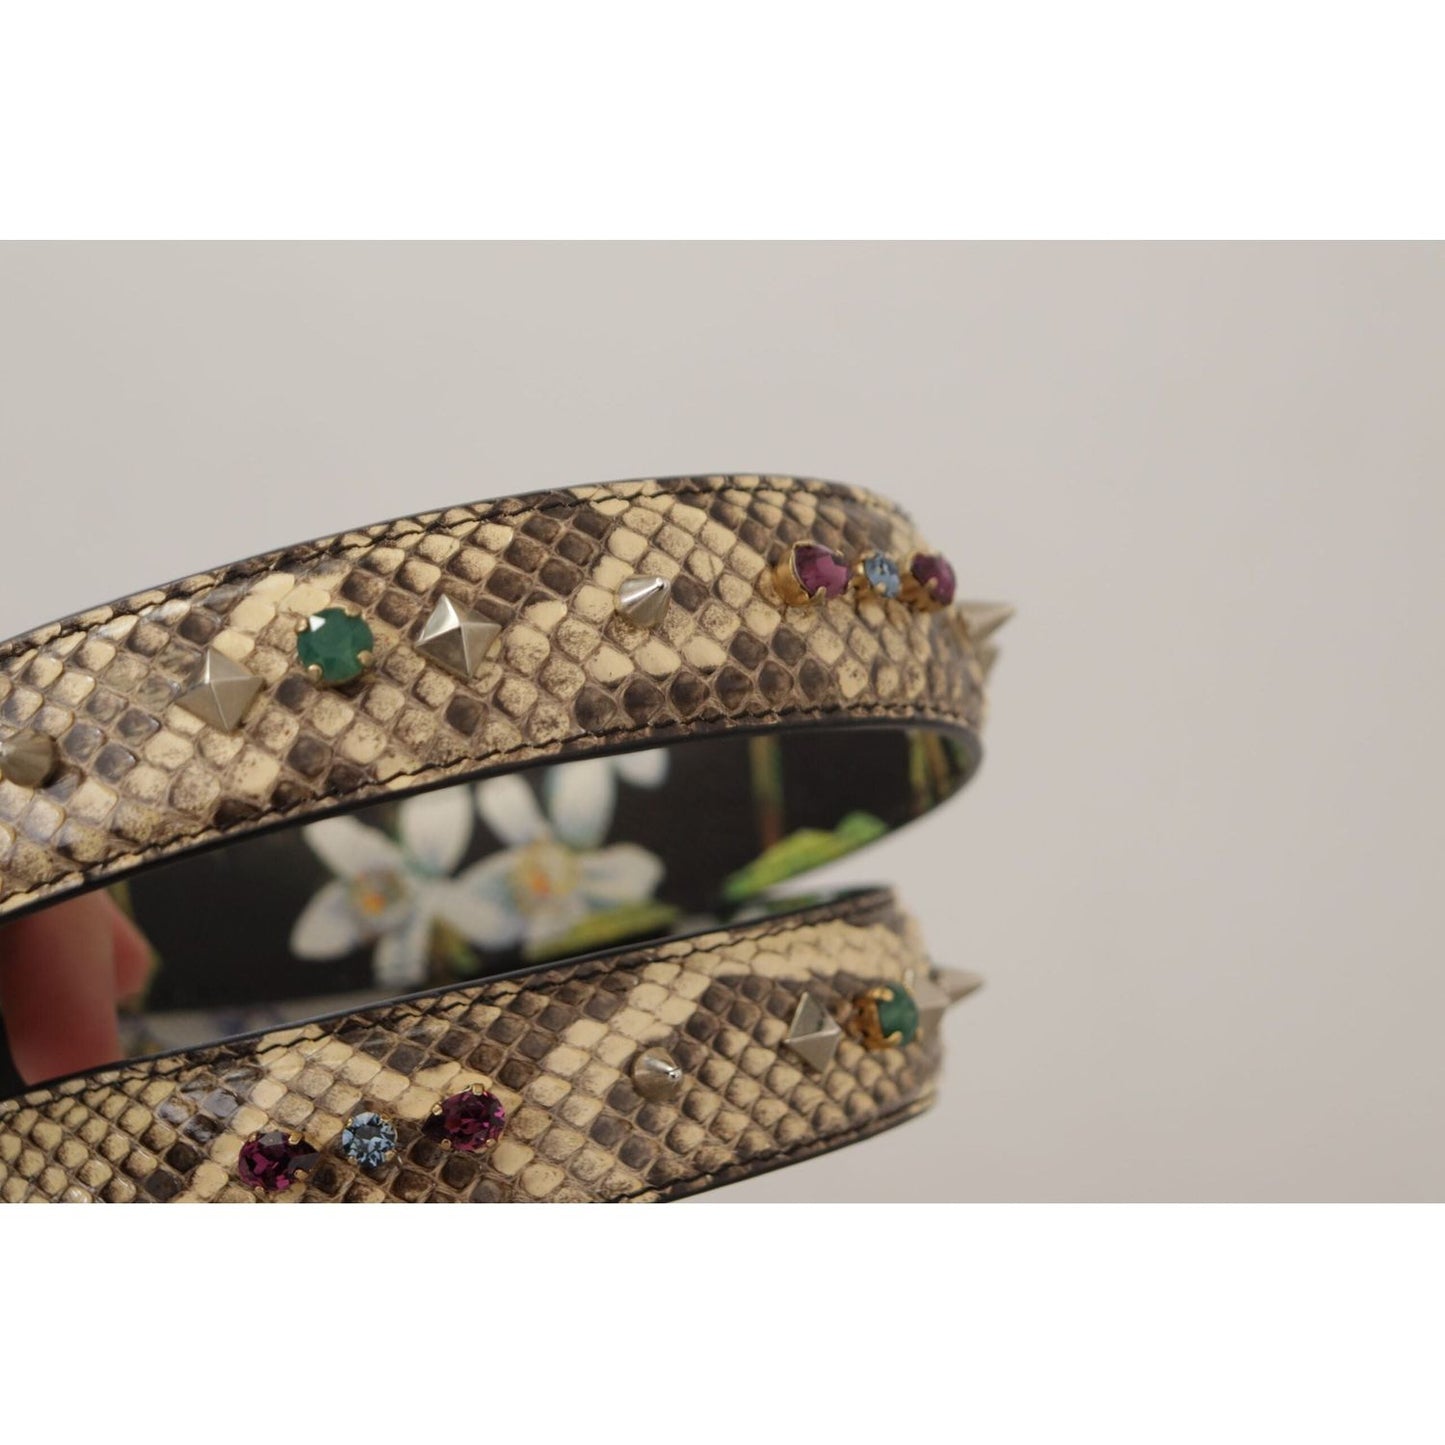 Dolce & Gabbana Elegant Beige Python Leather Shoulder Strap beige-exotic-leather-crystals-reversible-shoulder-strap IMG_0064-1-scaled-1-c2a1b010-b9c.jpg